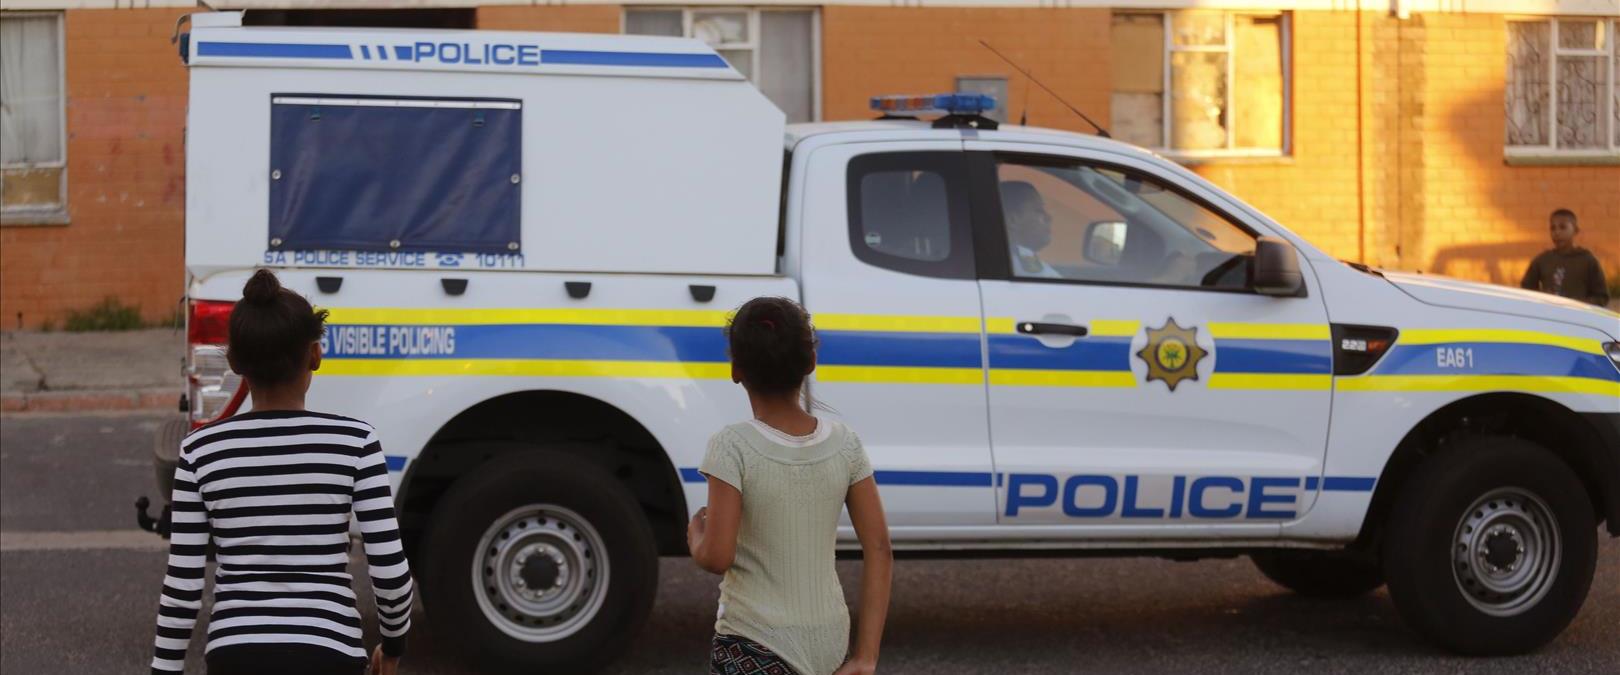 ניידת משטרה של דרום אפריקה